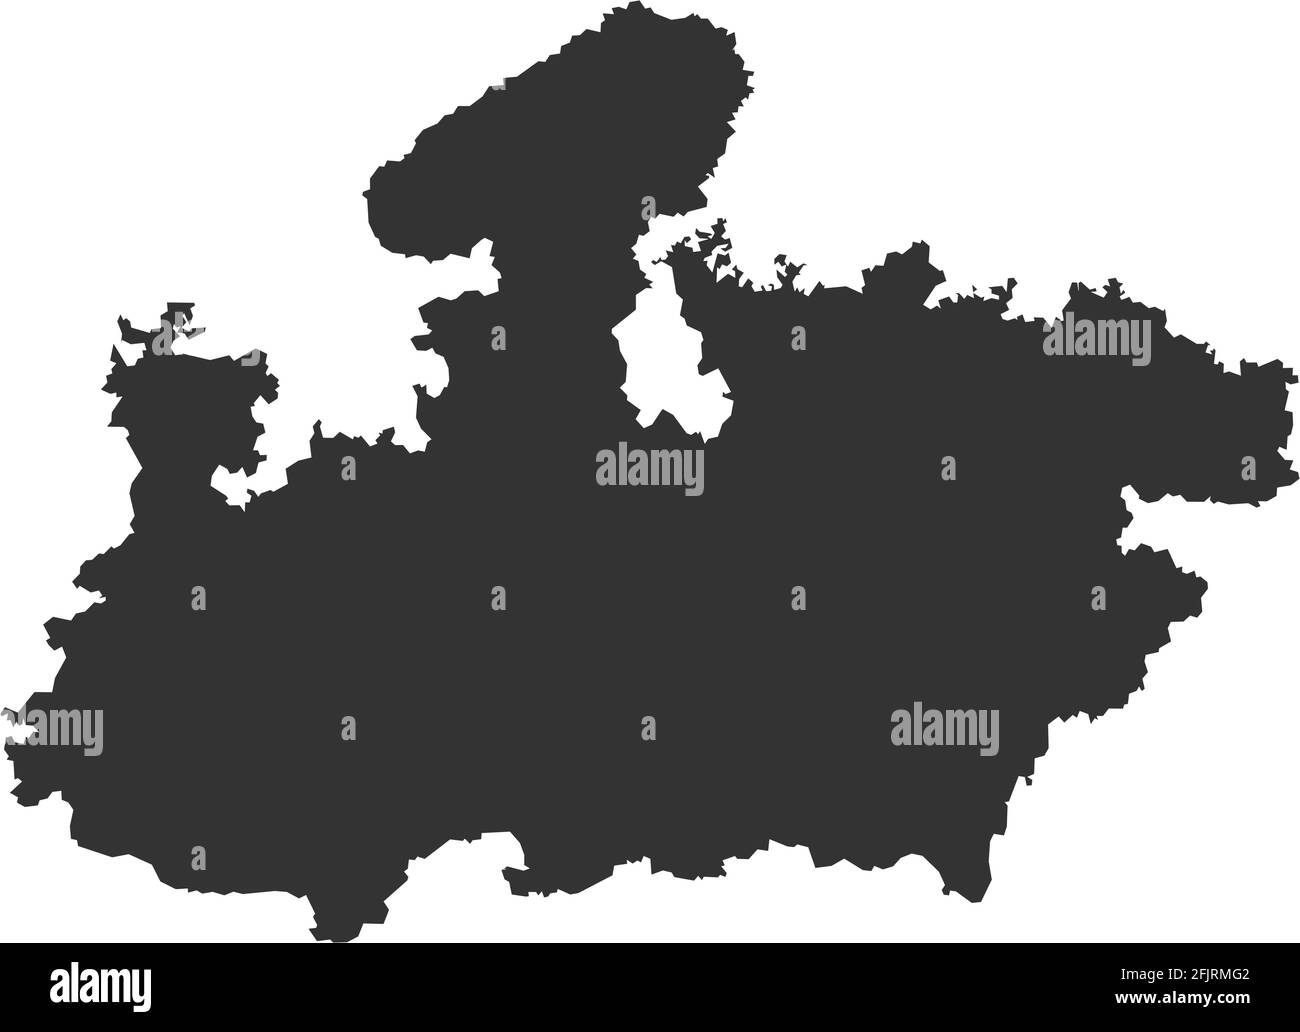 Mappa dello stato indiano di Madhya pradesh. Sfondo grigio scuro. Progettazione grafica dei concetti aziendali. Illustrazione Vettoriale